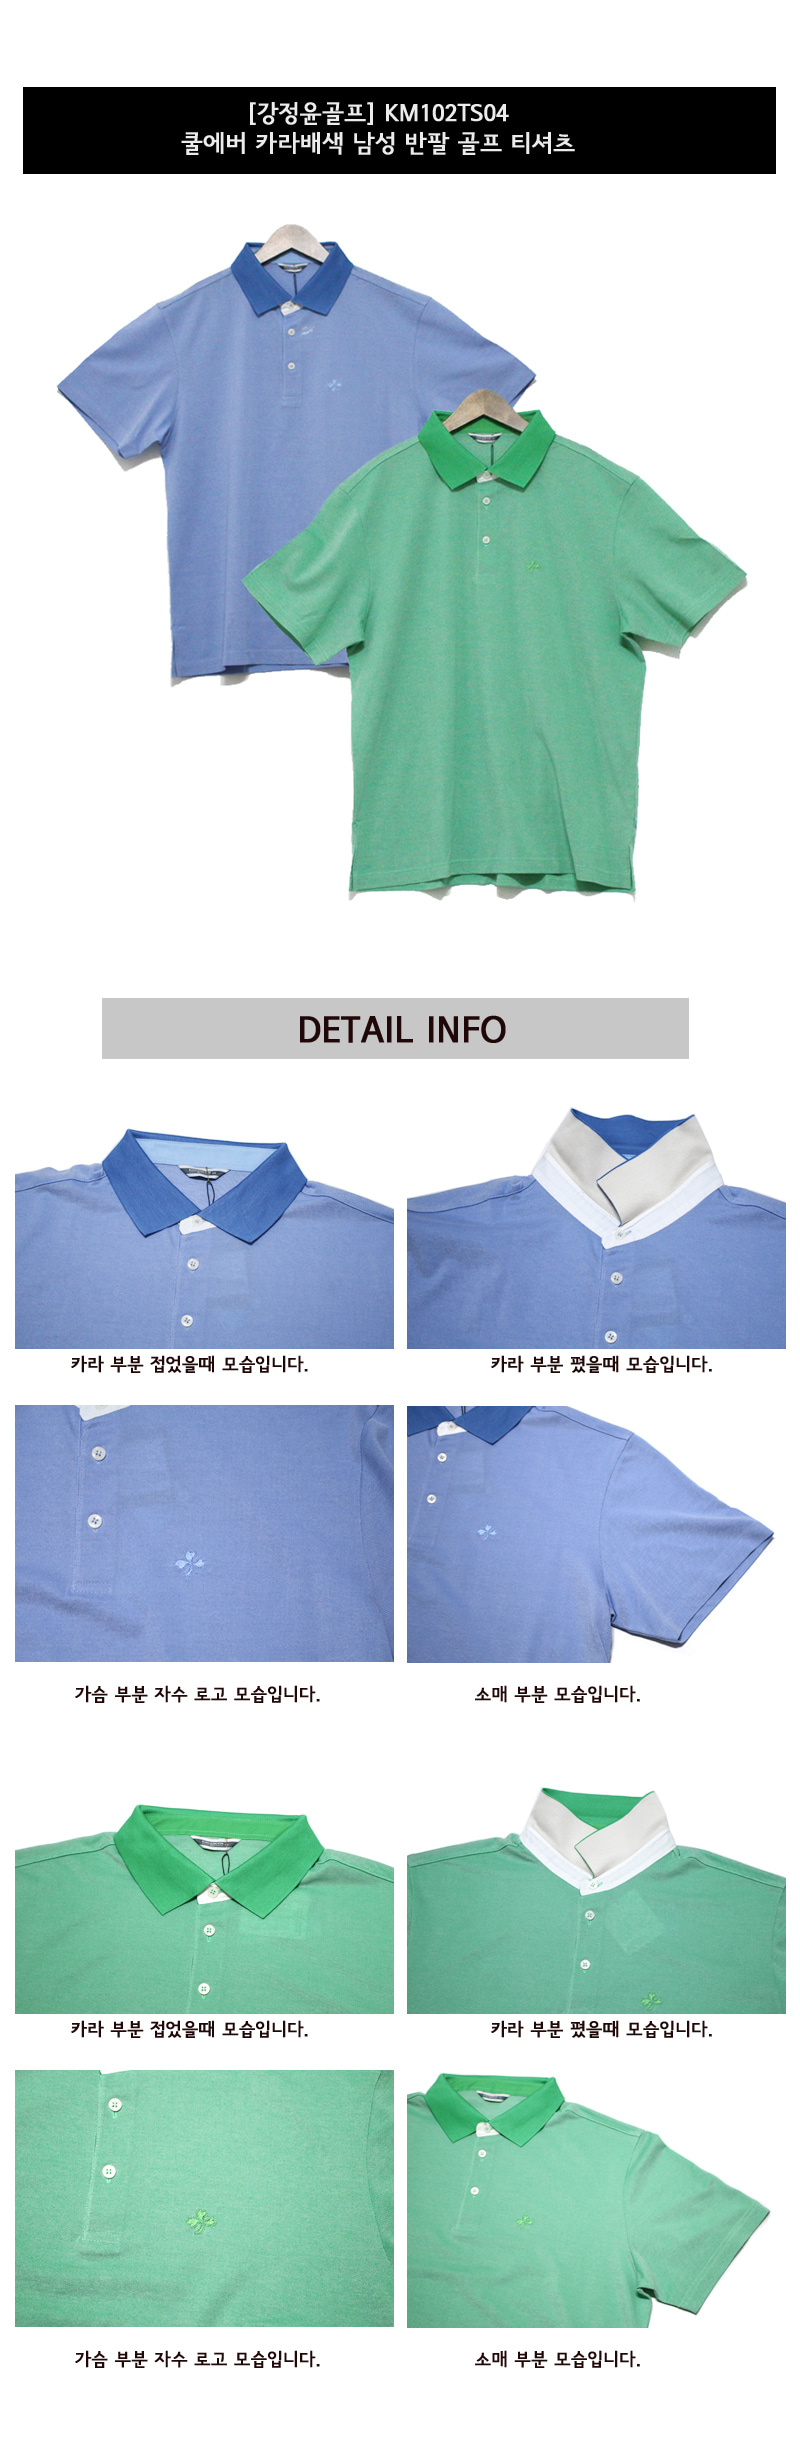 강정윤골프 쿨에버 카라배색 남성 반팔 골프 티셔츠 (KM102TS04) 색상 디테일 설명